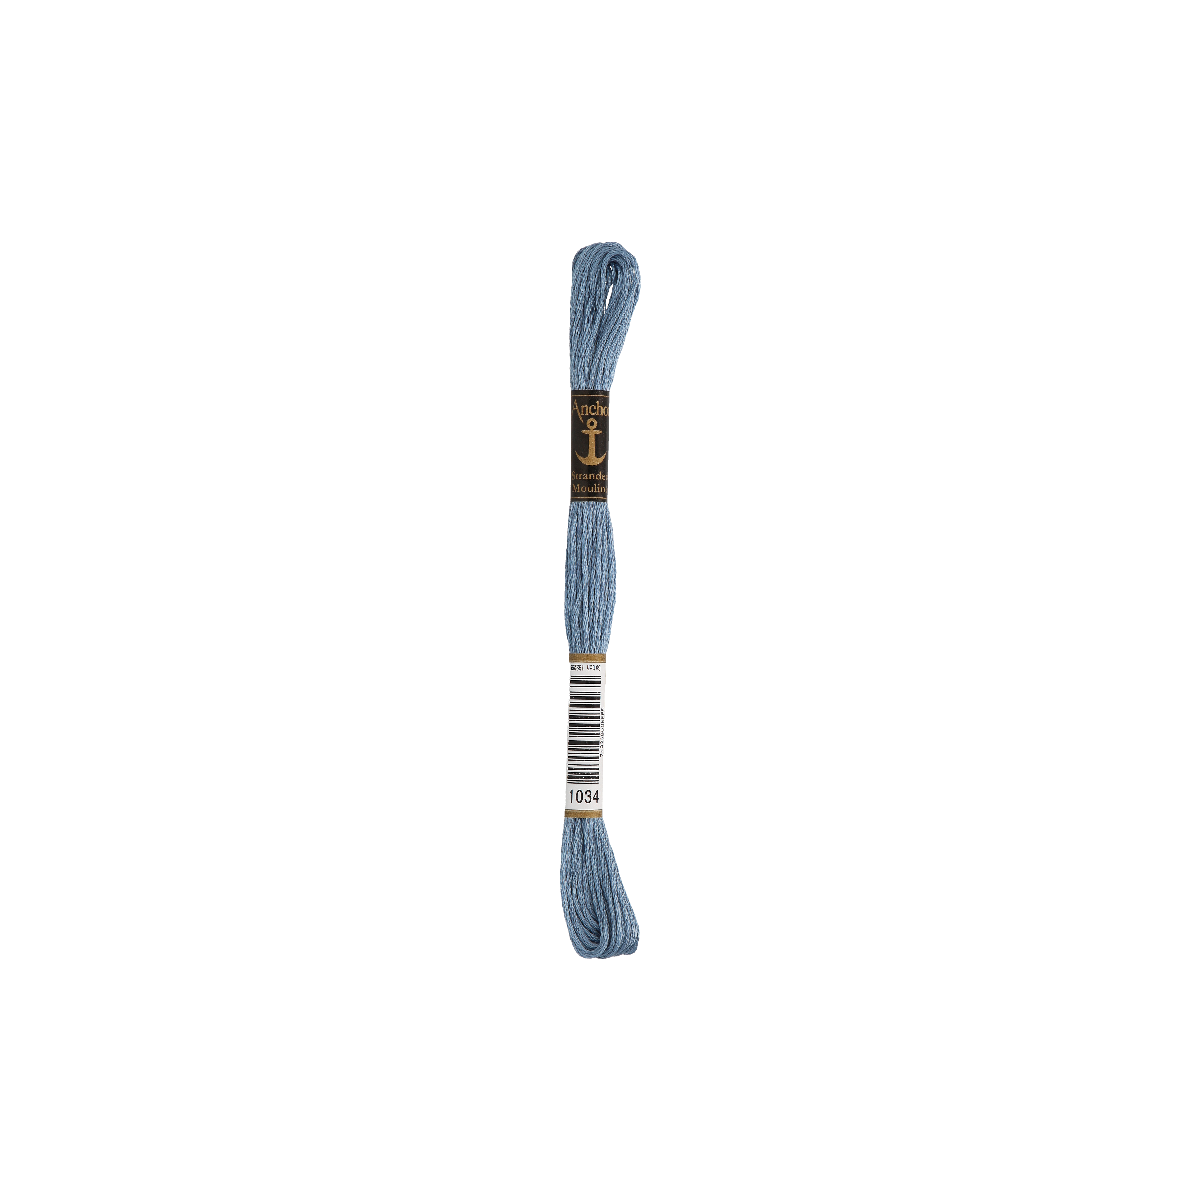 Anchor Sticktwist 8m, acciaio, cotone, colore 1034, 6 fili